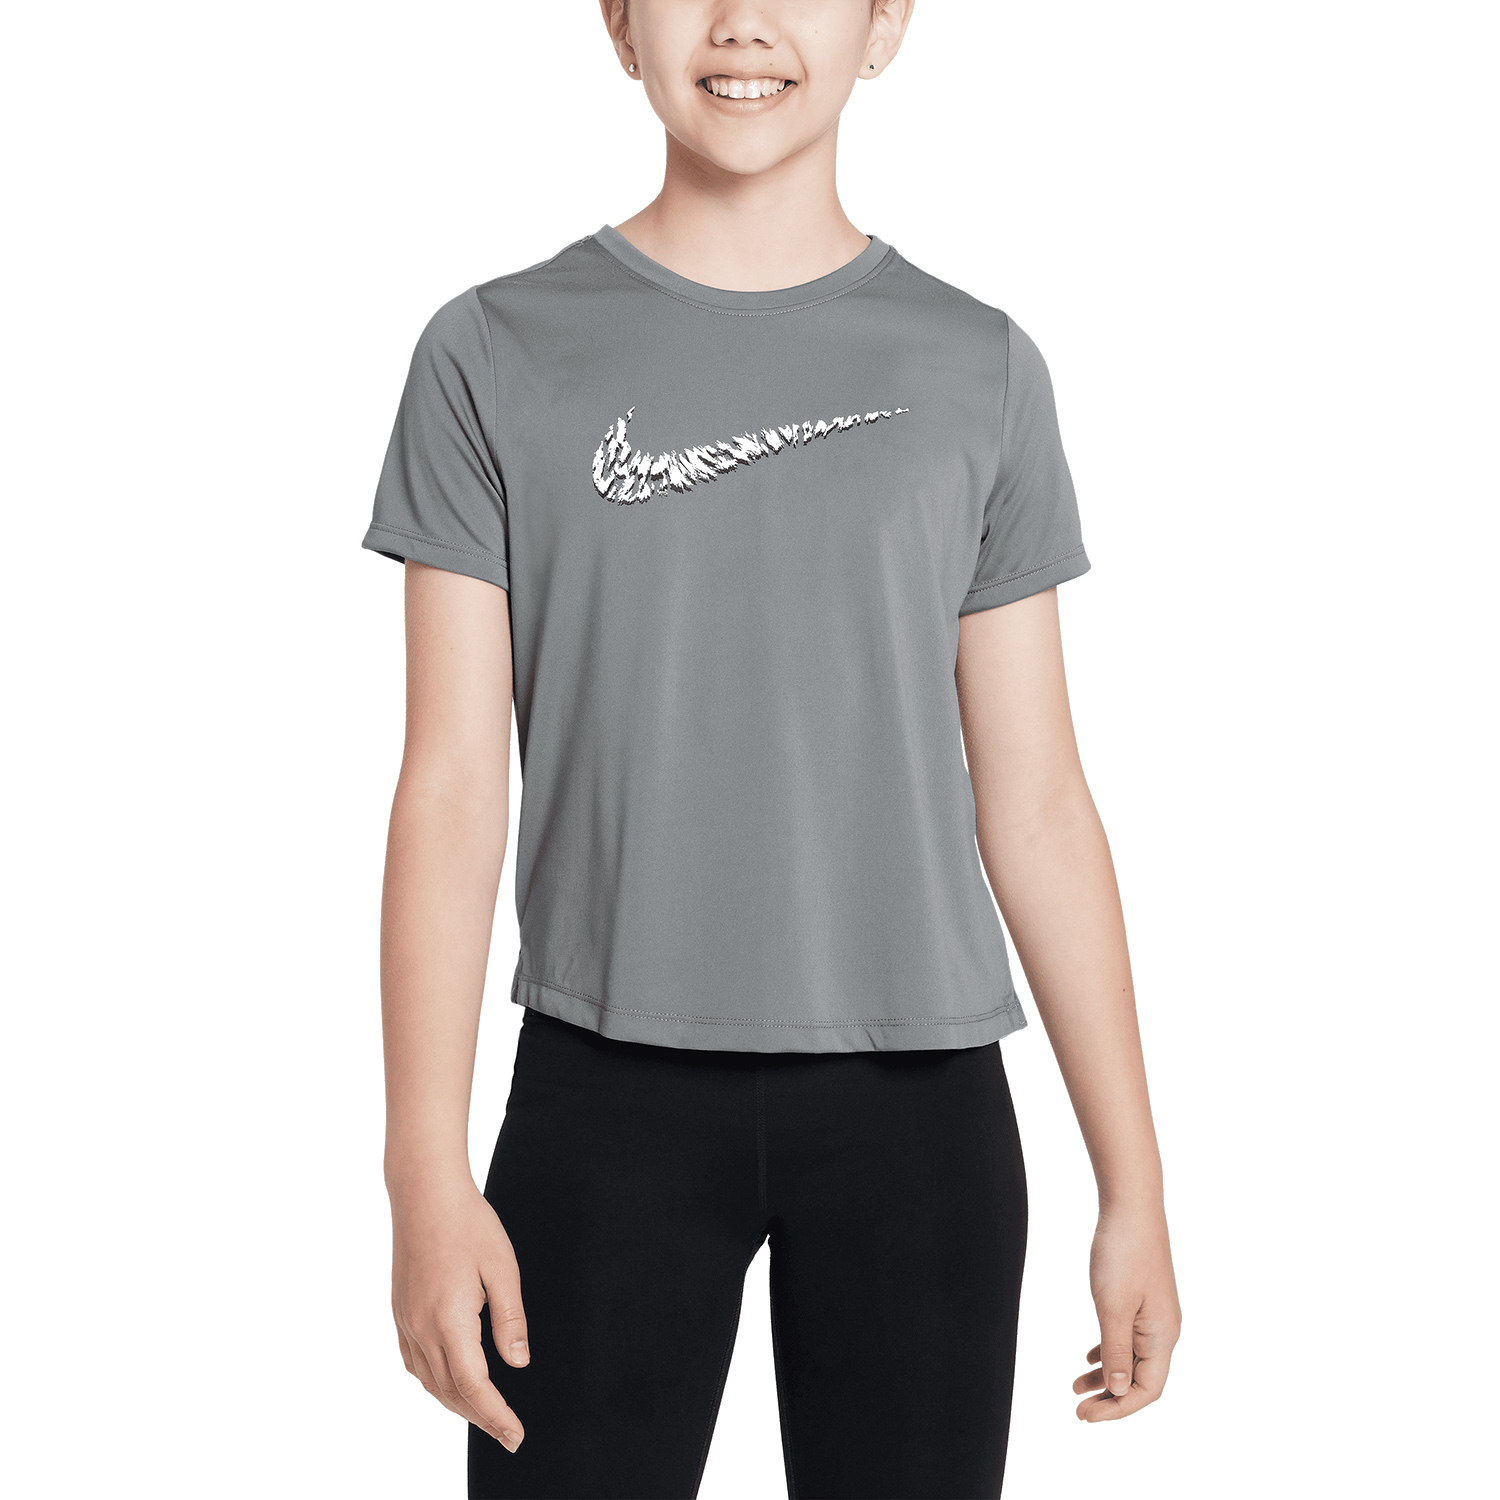 Nike One T-Shirt Girl - Smoke Grey